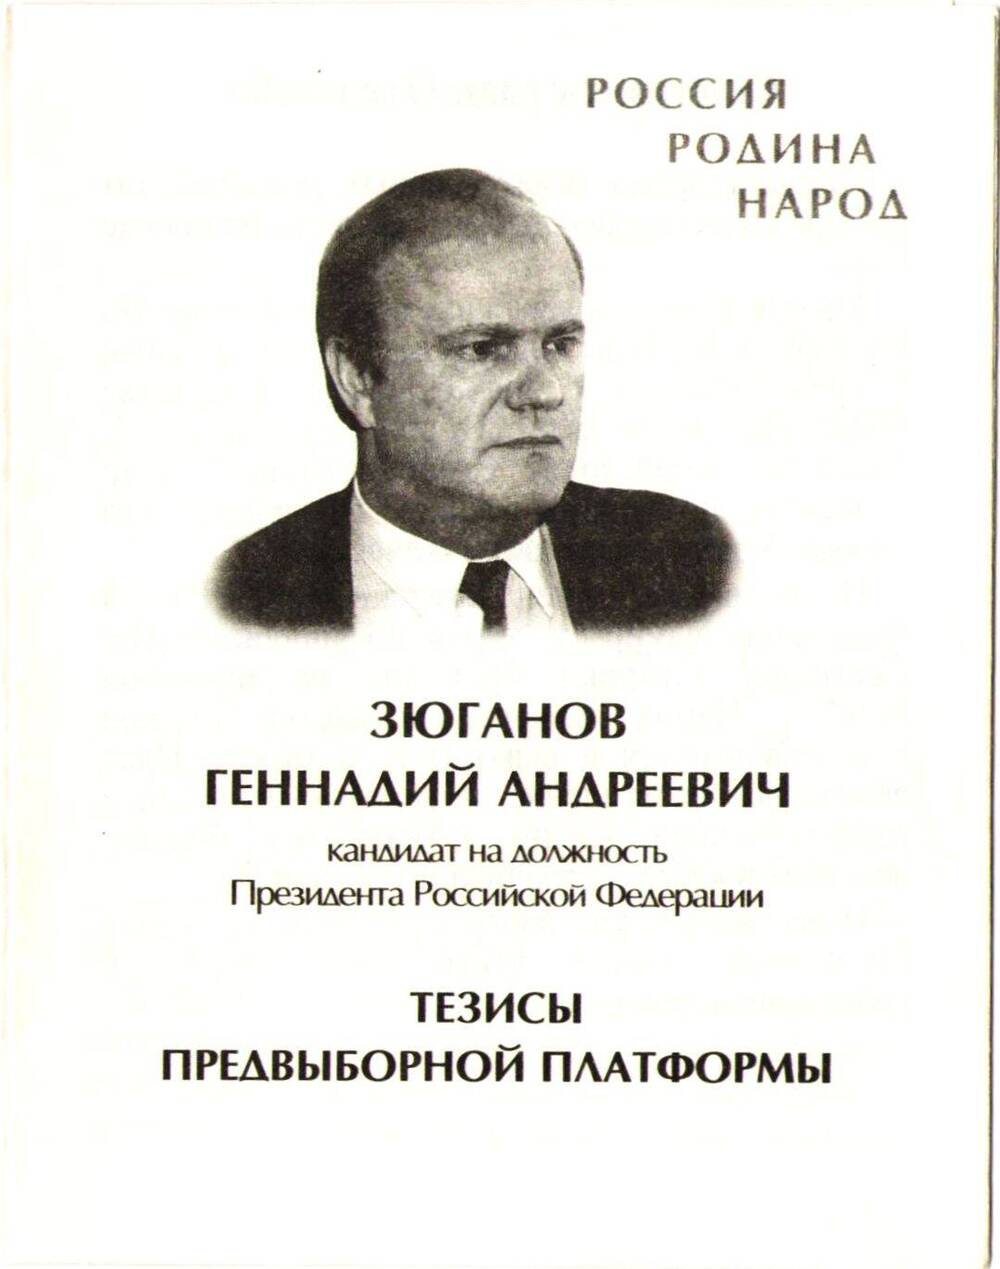 Буклет с тезисами предвыборной платформы Зюганова Г.А.